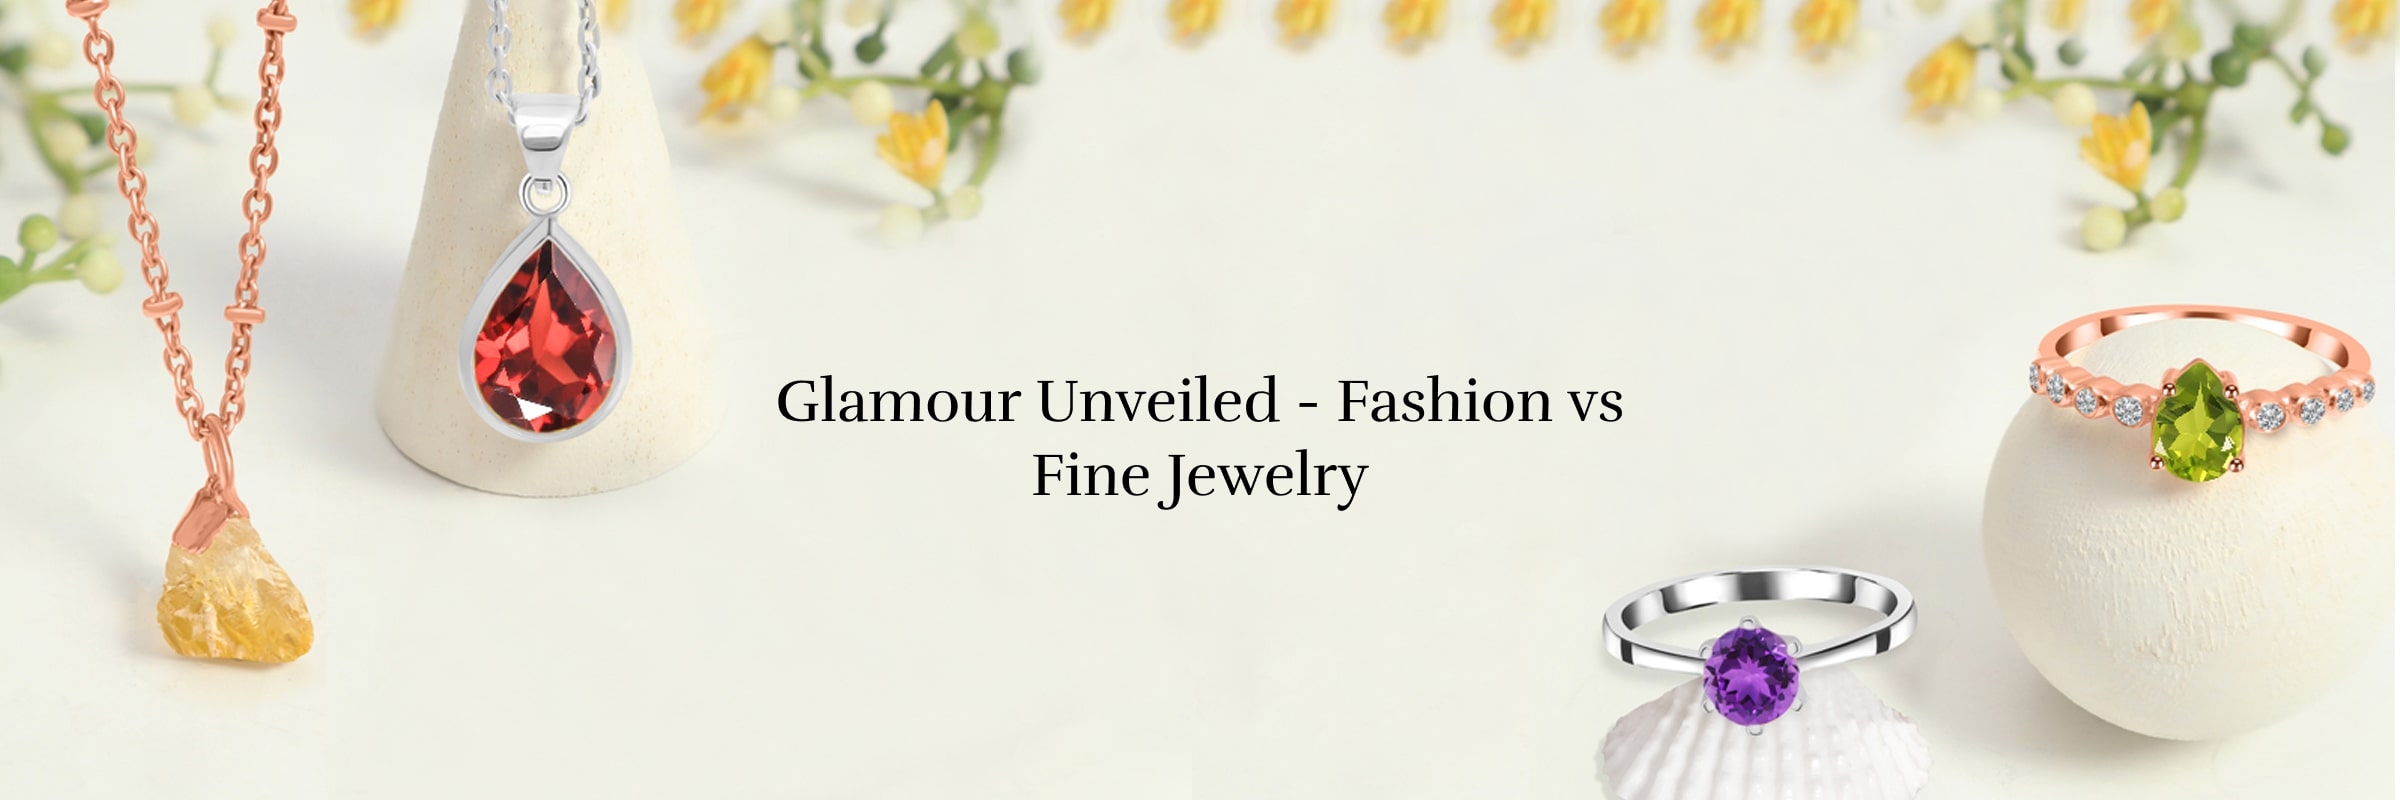 Fashion jewelry vs fine jewelry